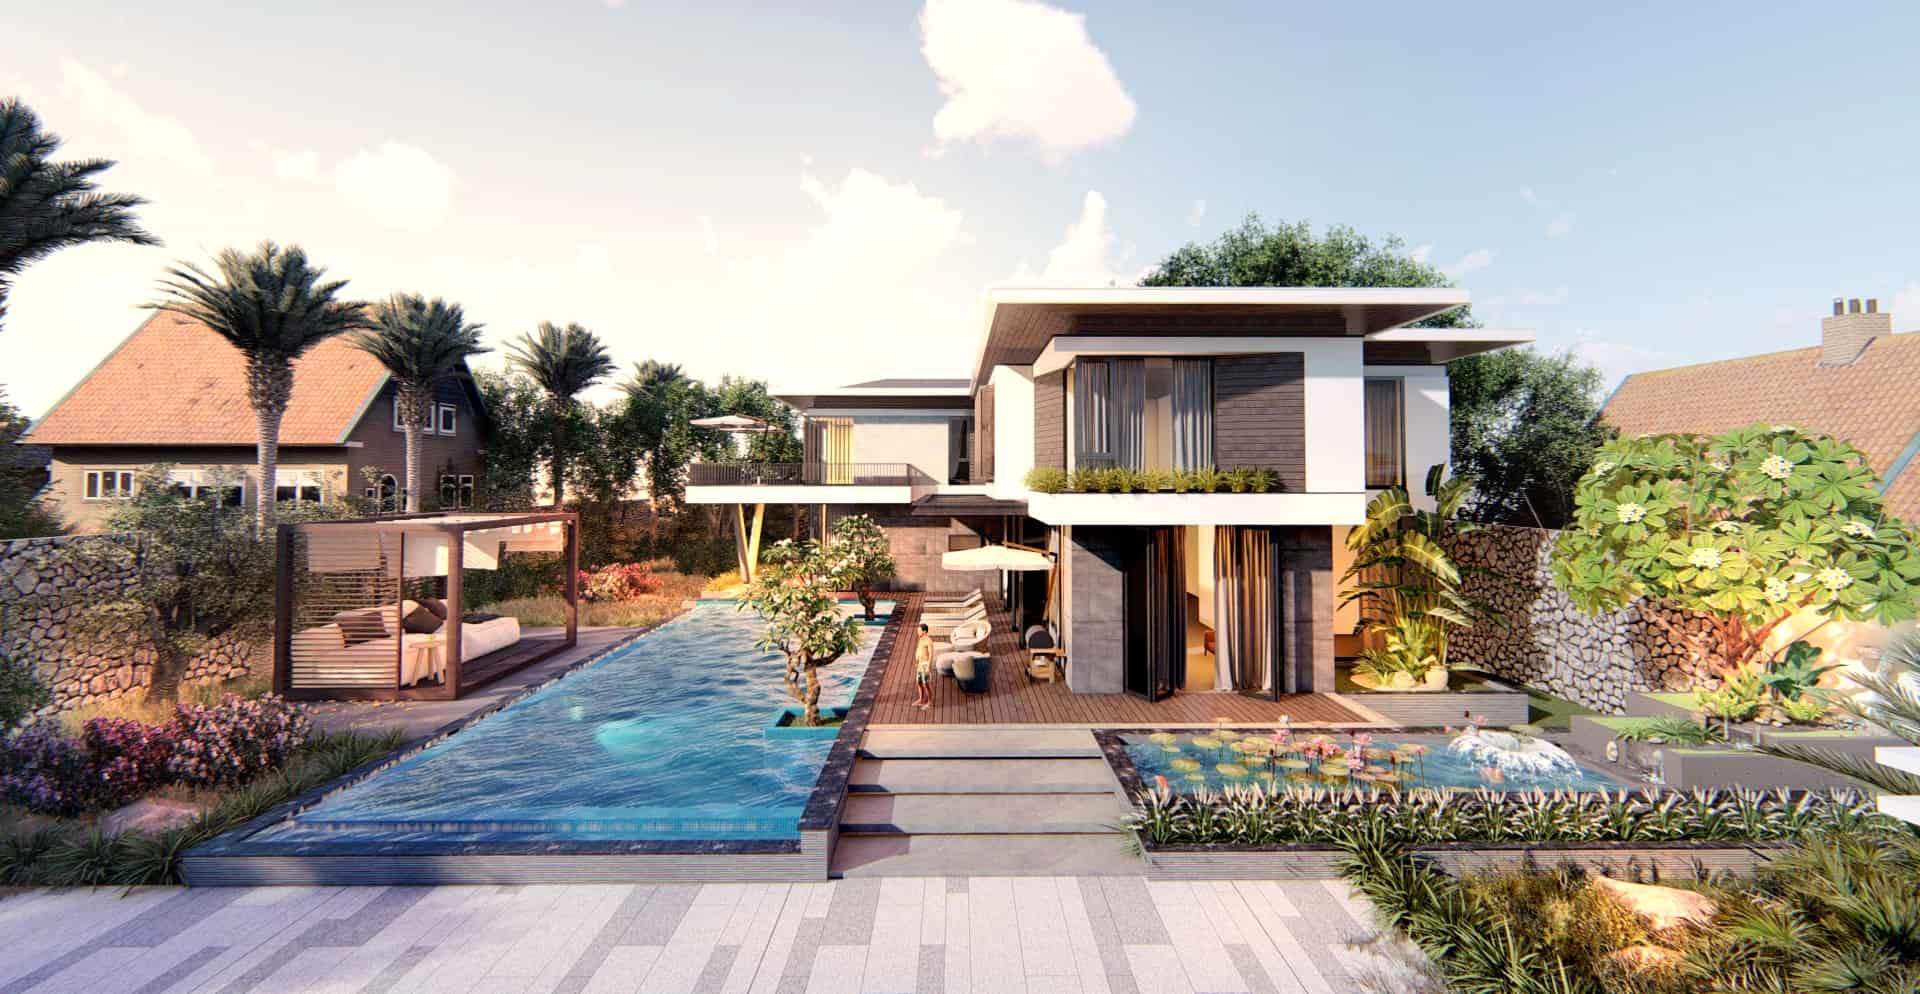 Kiến trúc siêu hiện đại của biệt thự 2 tầng nghỉ dưỡng cùng bể bơi chữ nhật trải dài